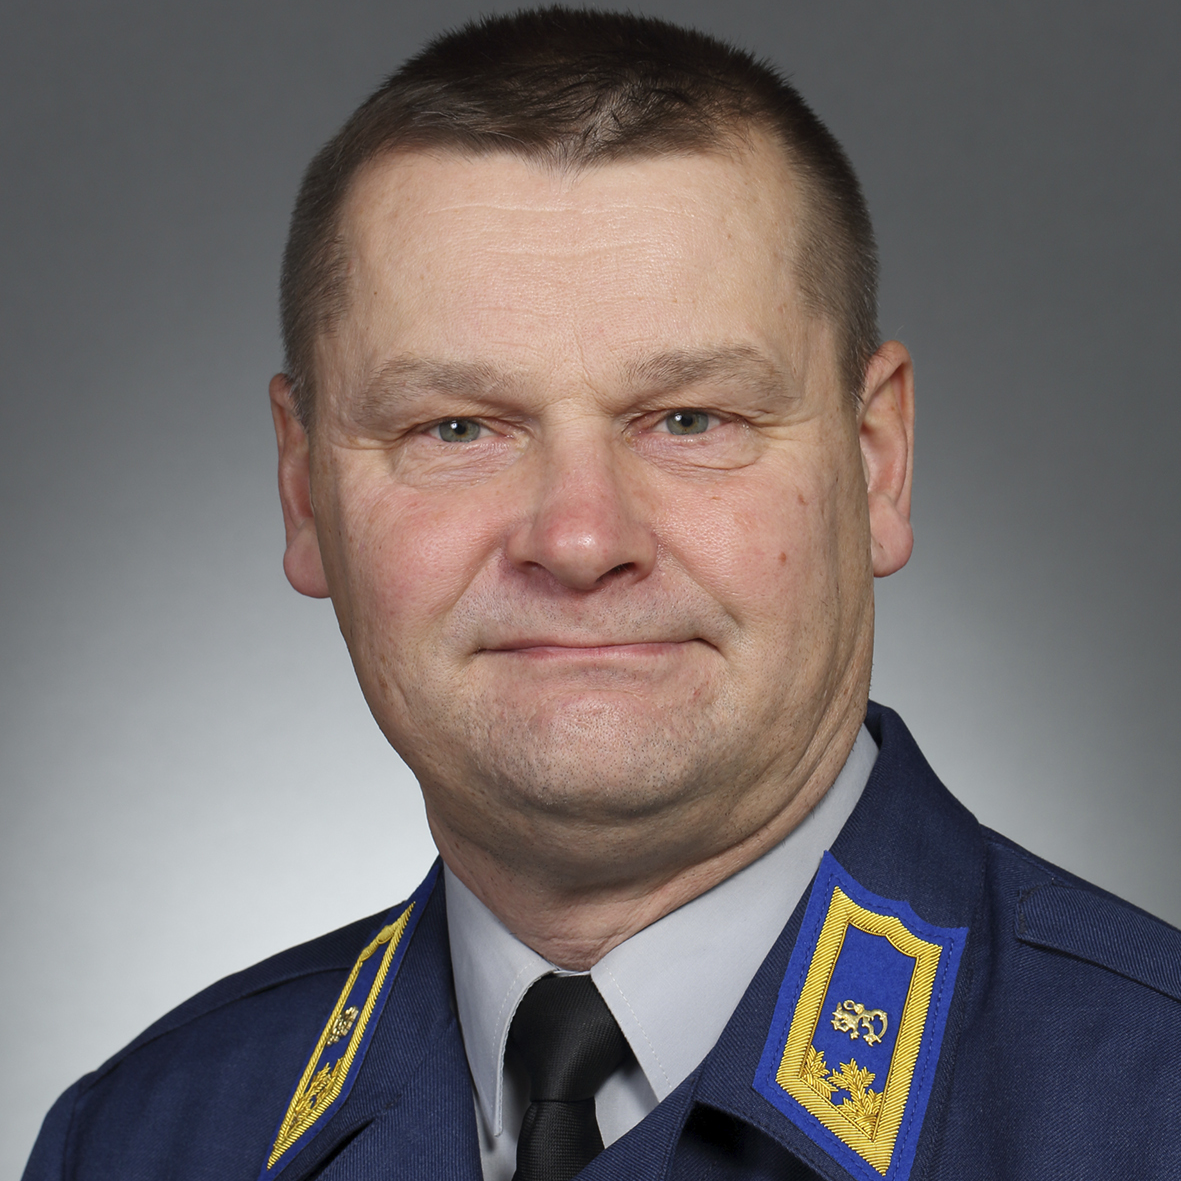 Brigadier General Juha-Pekka Keränen